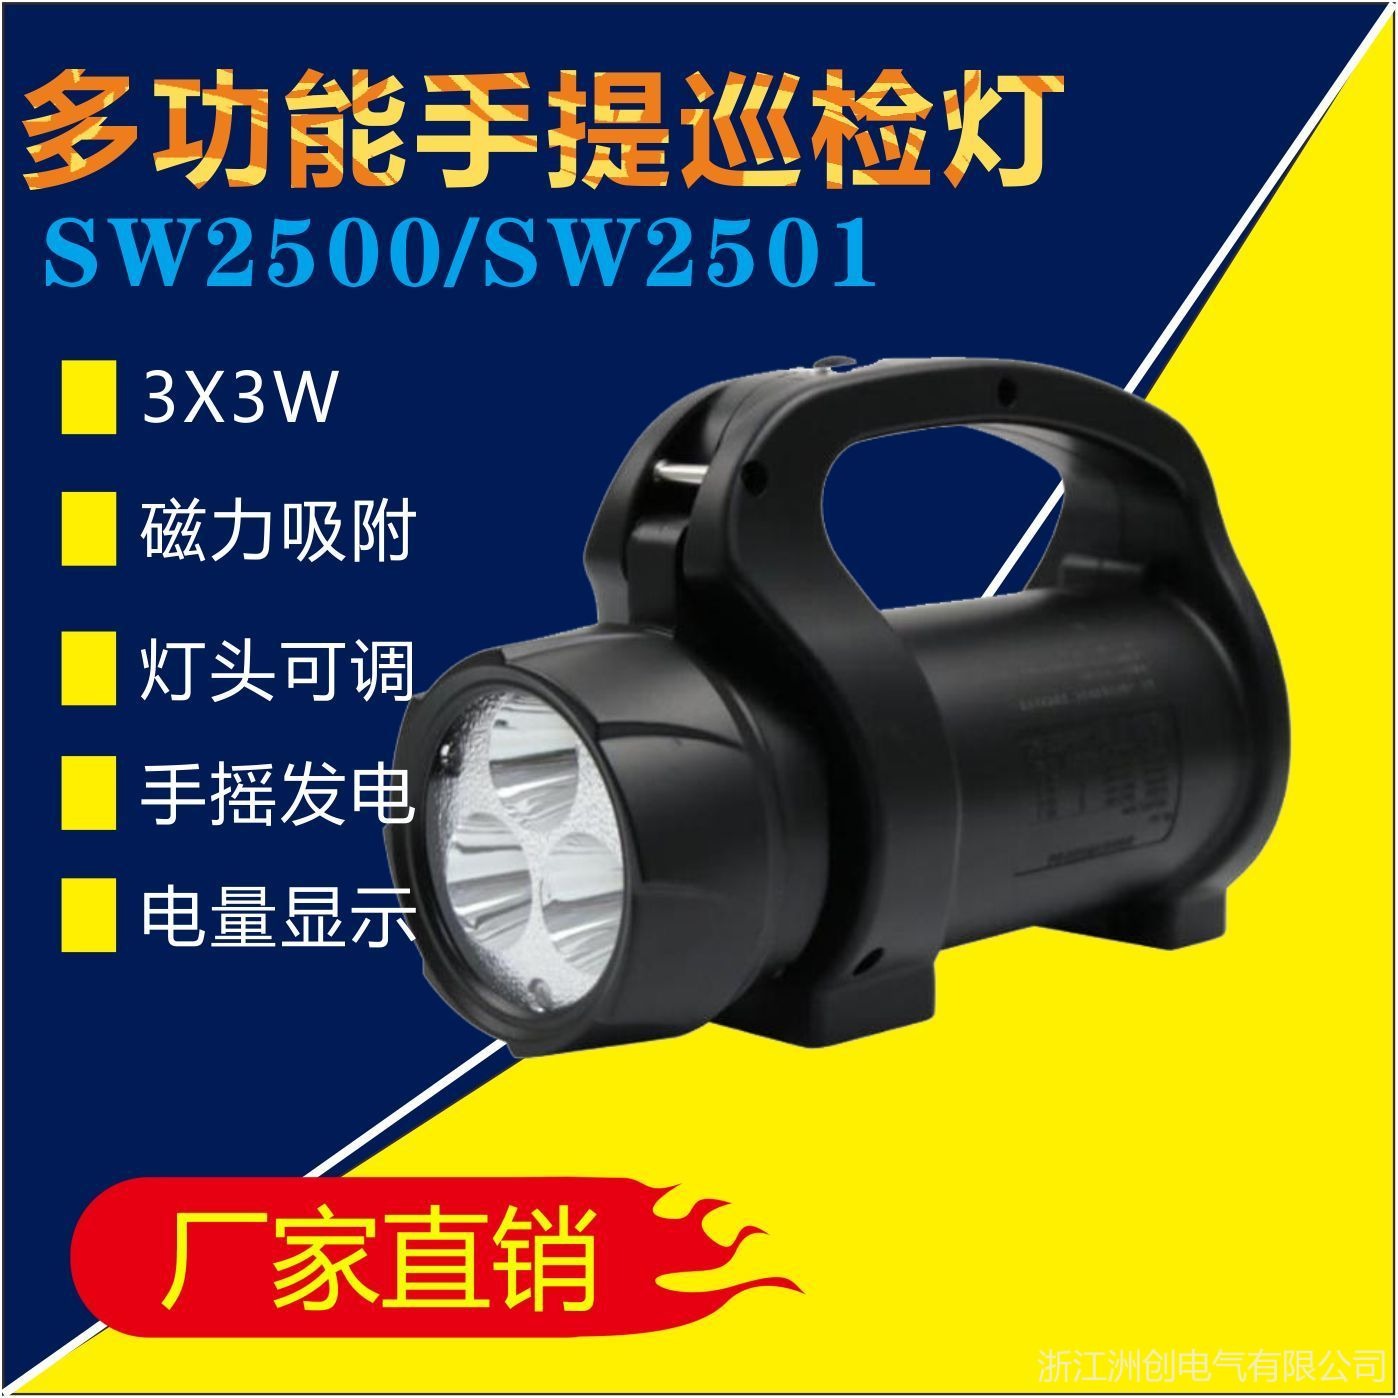 BJQ5502多功能led手电筒 SW2510手摇发电磁力工作灯 铁路电业手提式应急探照灯